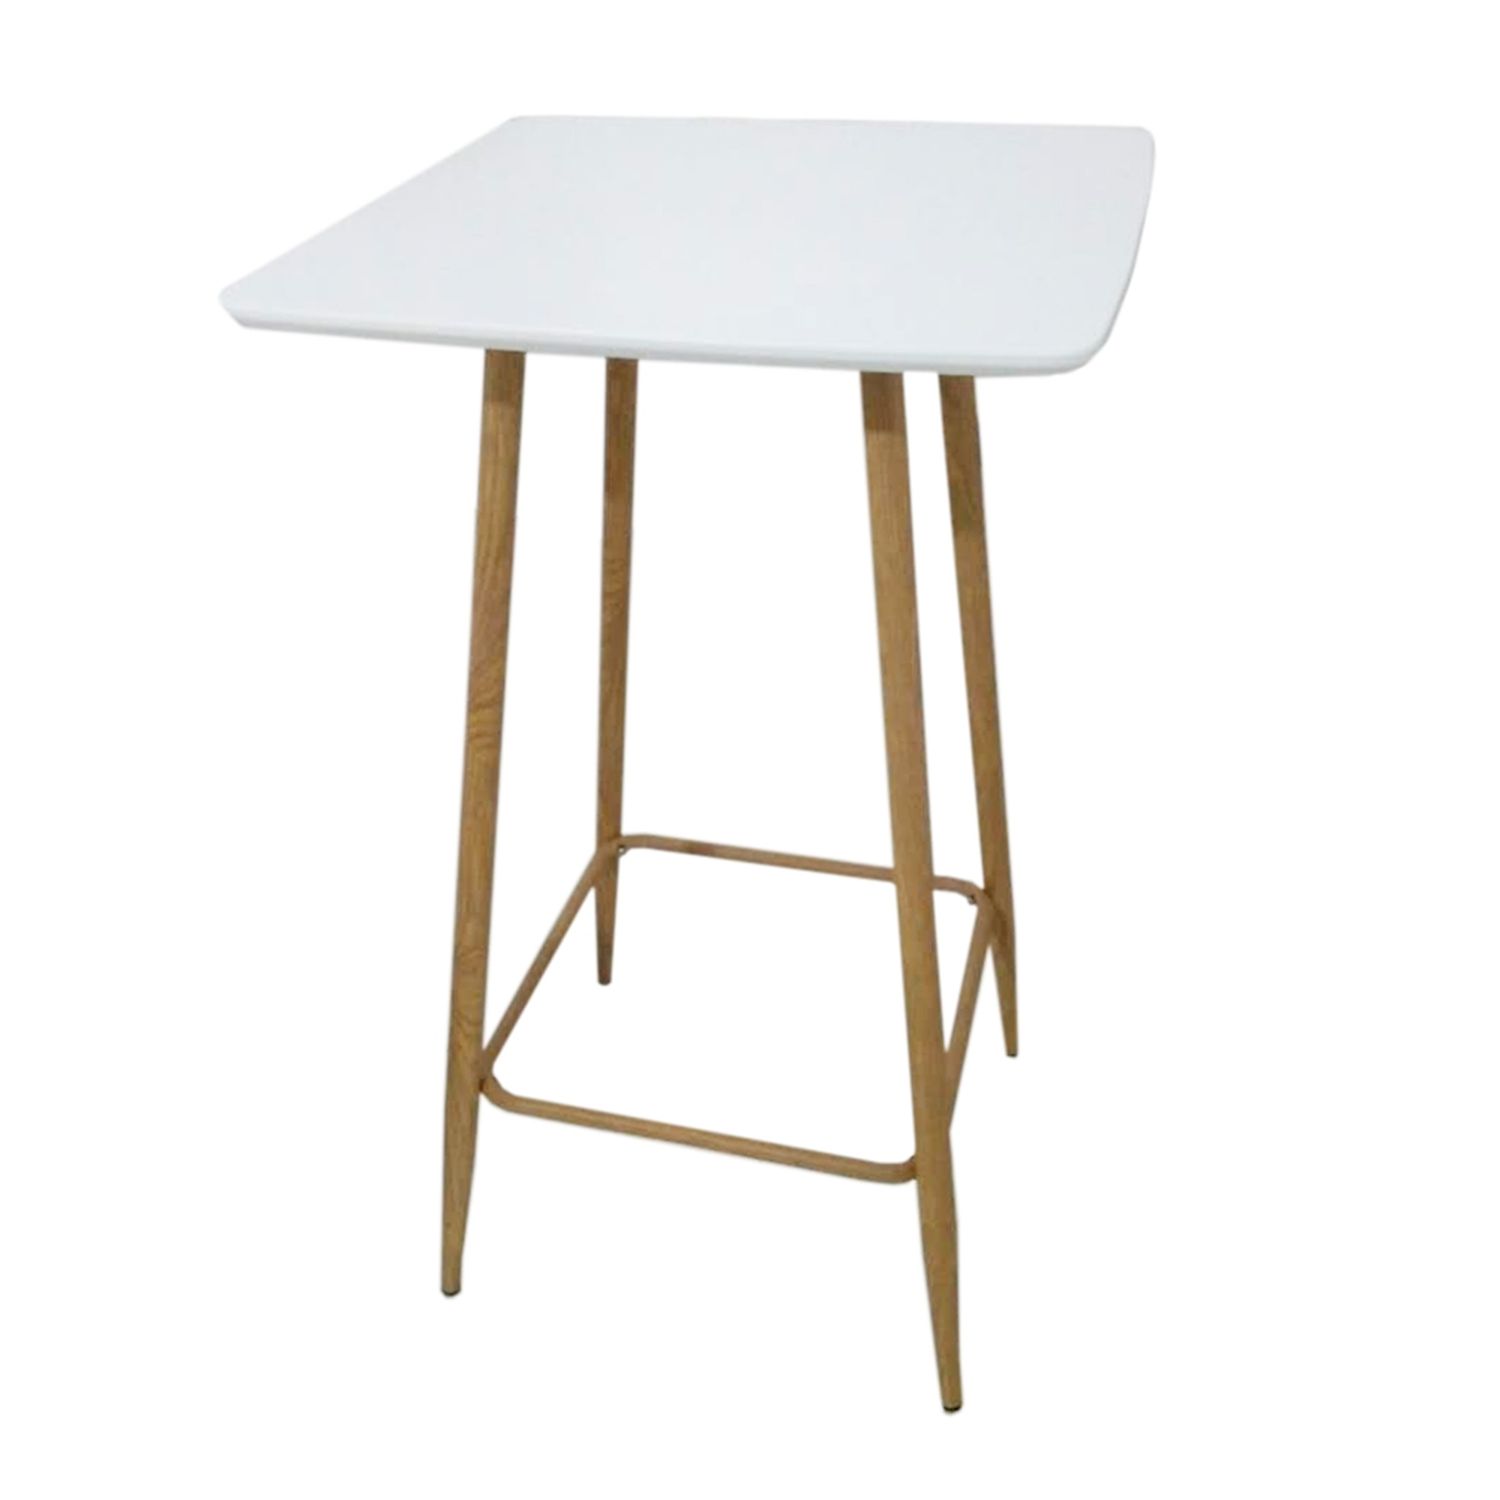 Table haute scandinave l. 60 x h. 102 cm blanc